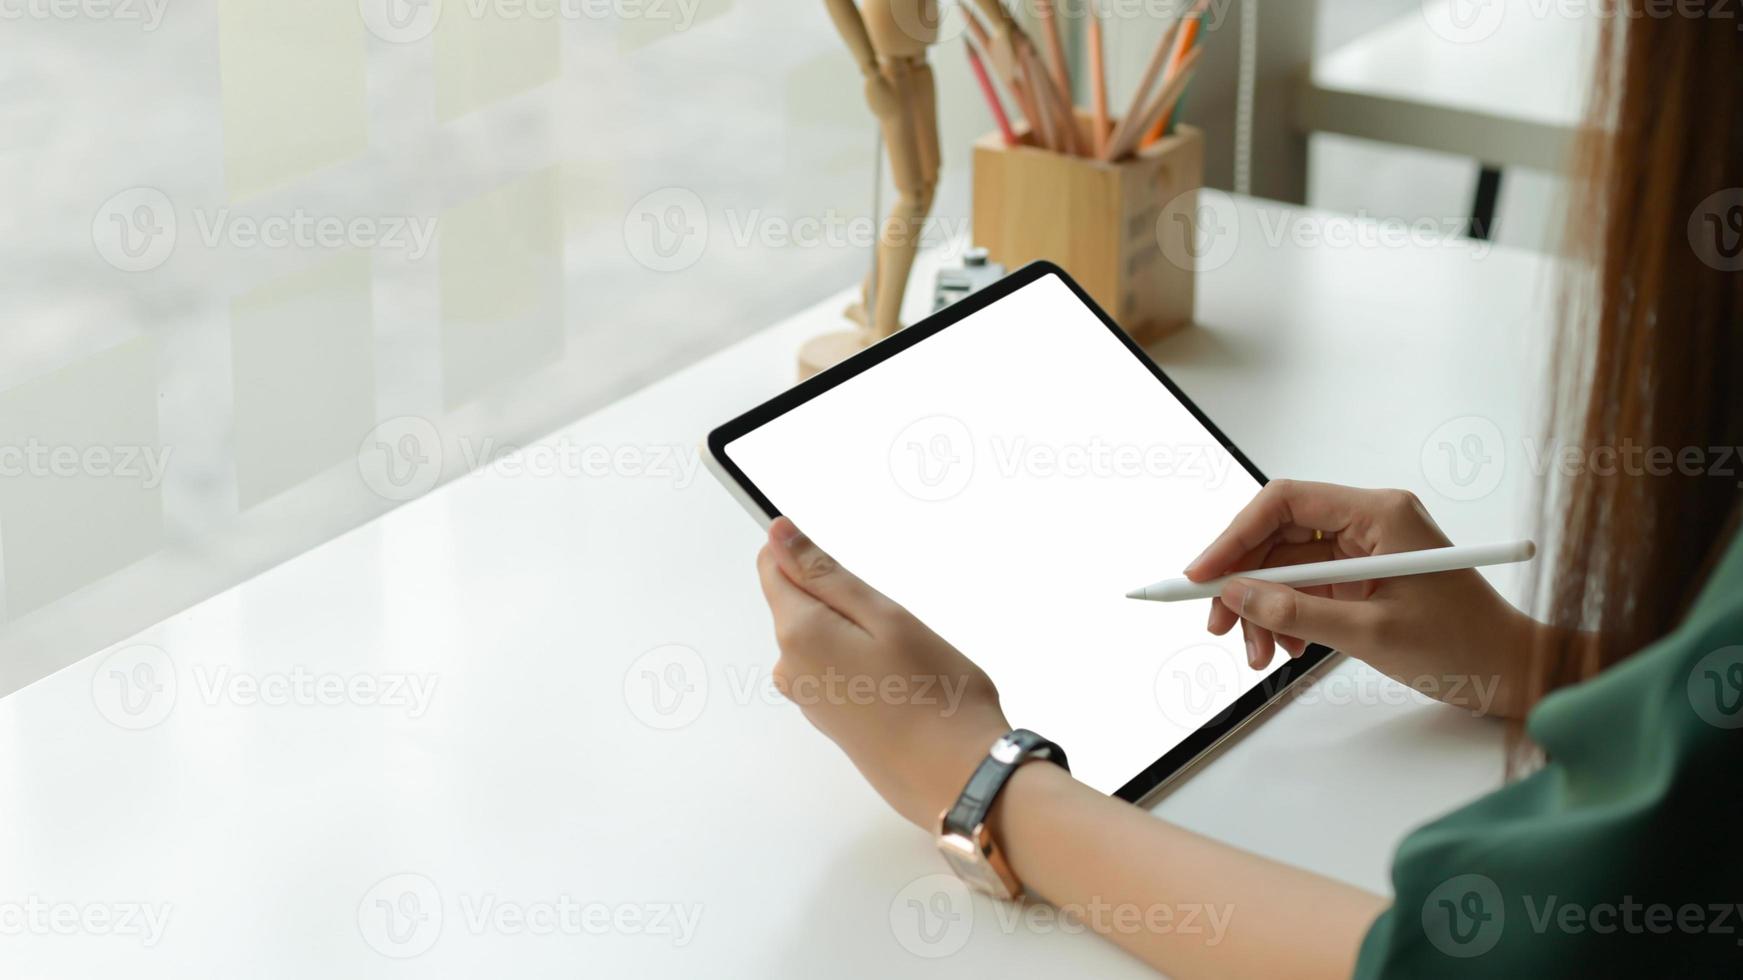 graphic designer disegna una tavoletta digitale presso lo studio dell'ufficio. foto